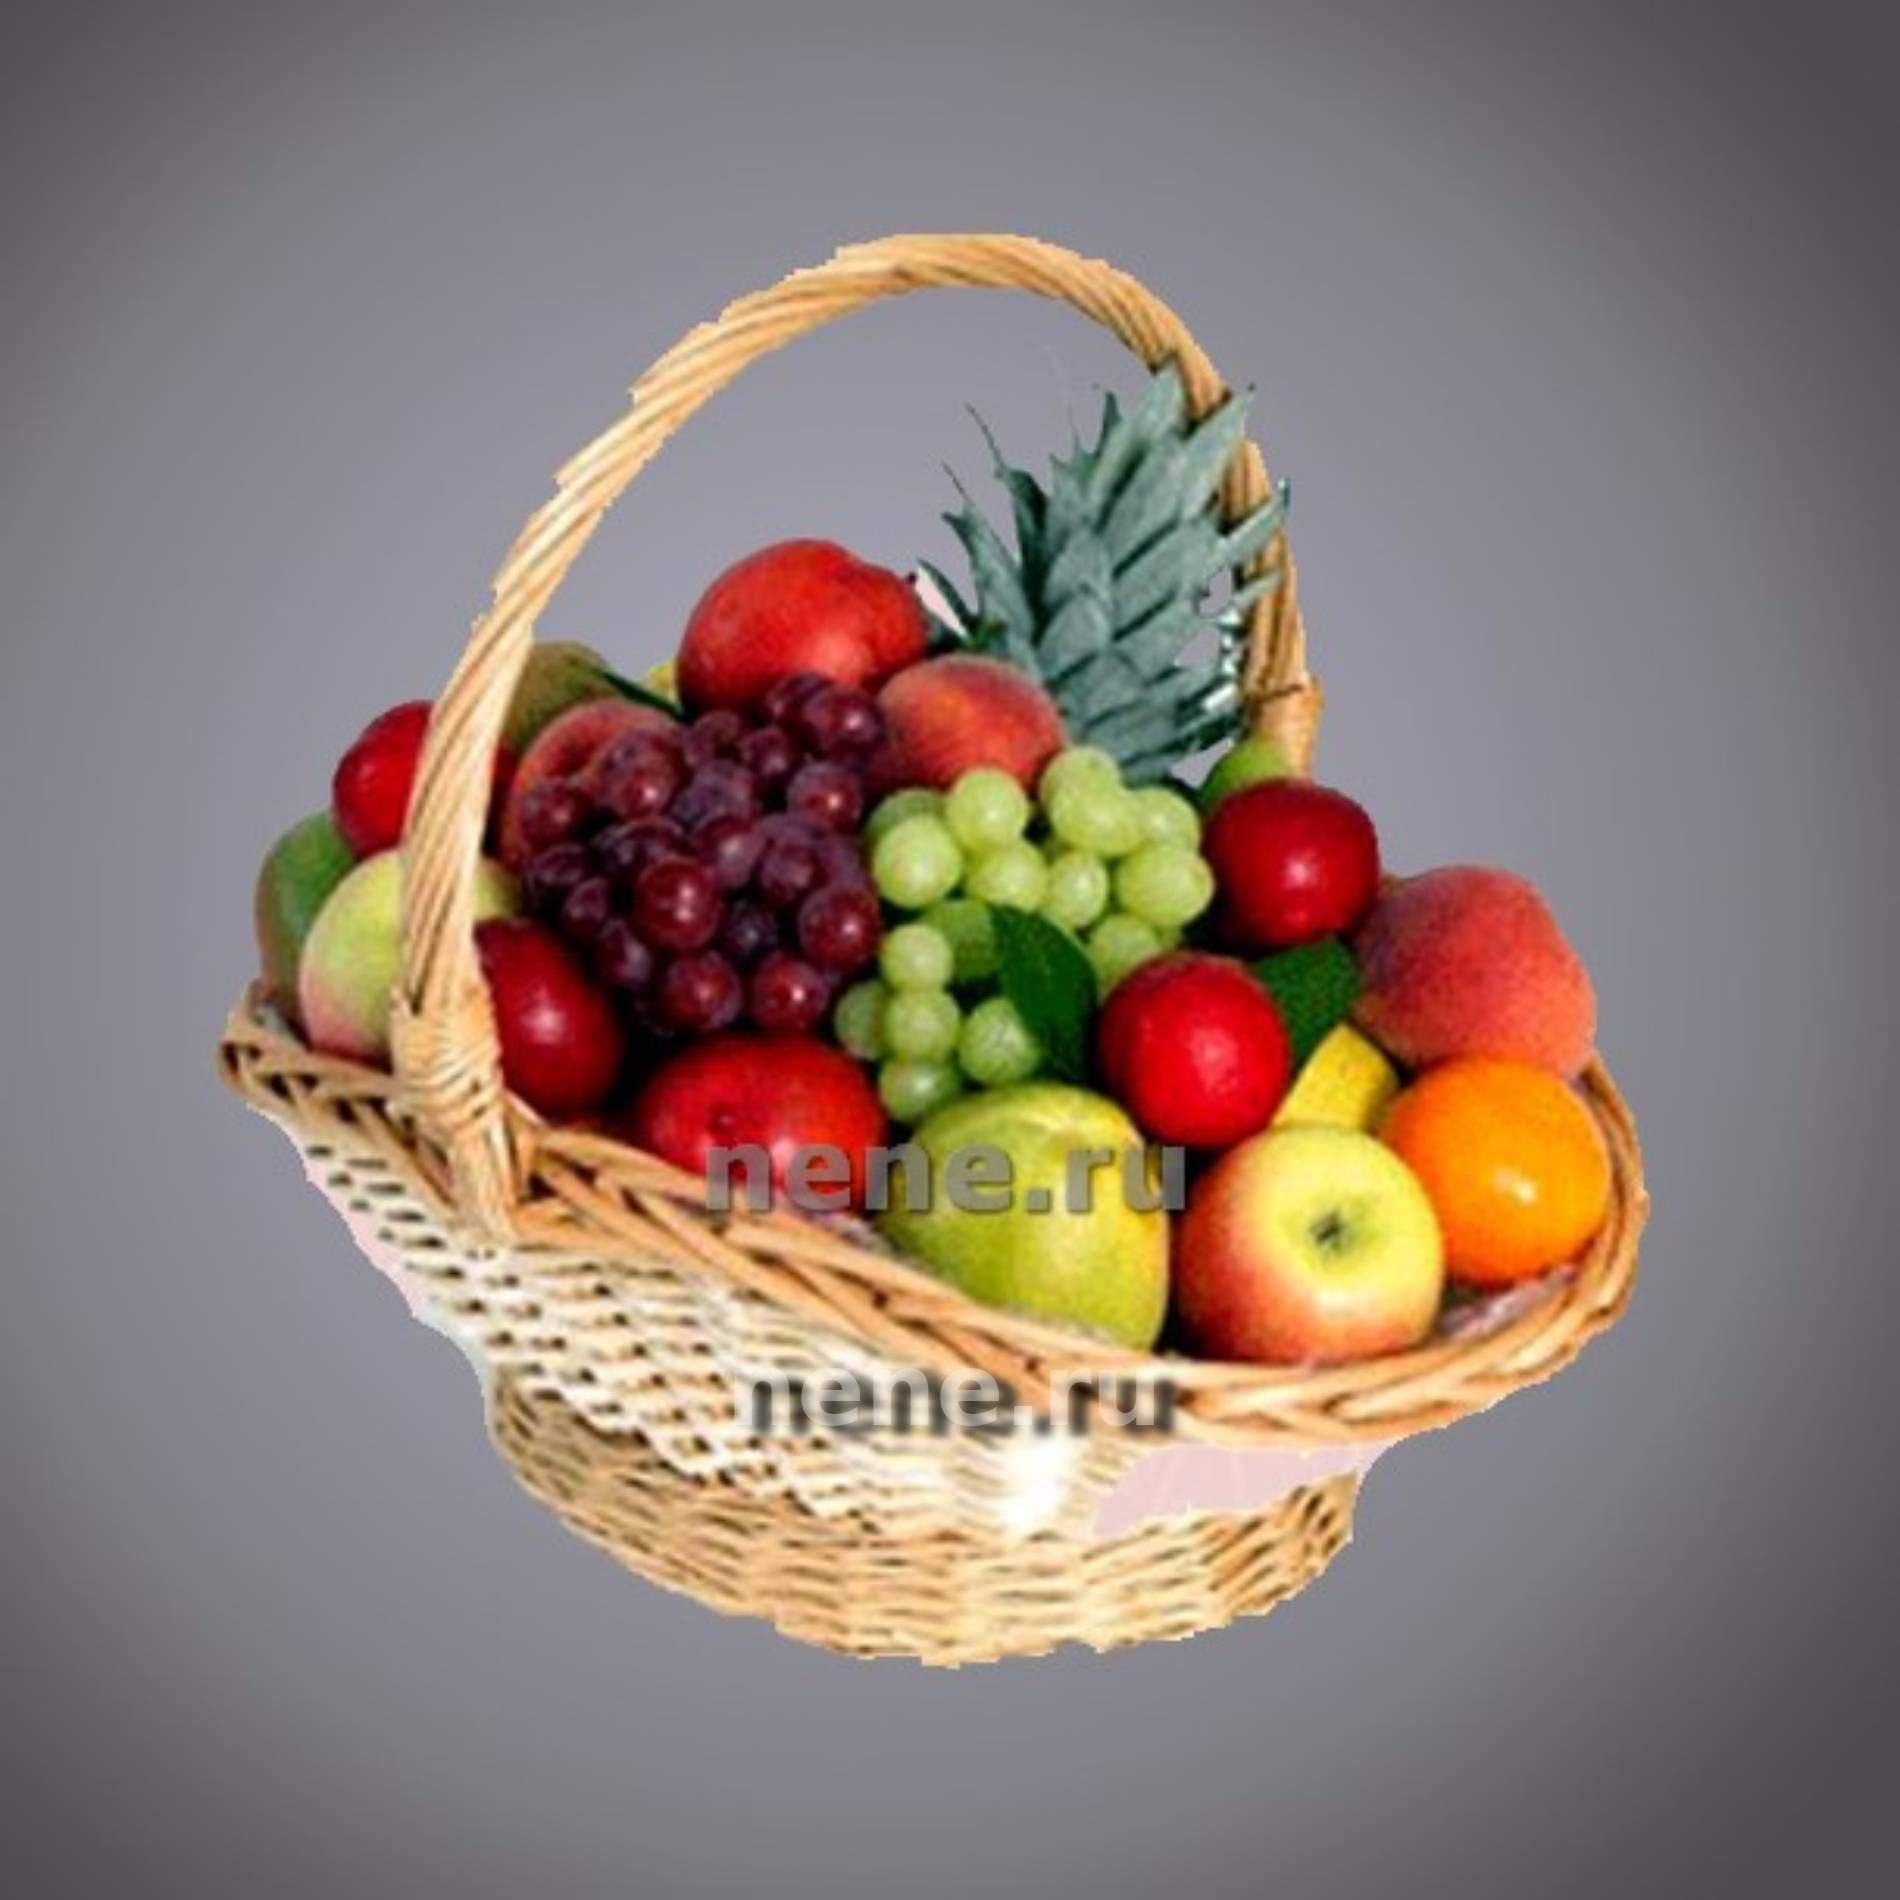 Fruit Basket Explained